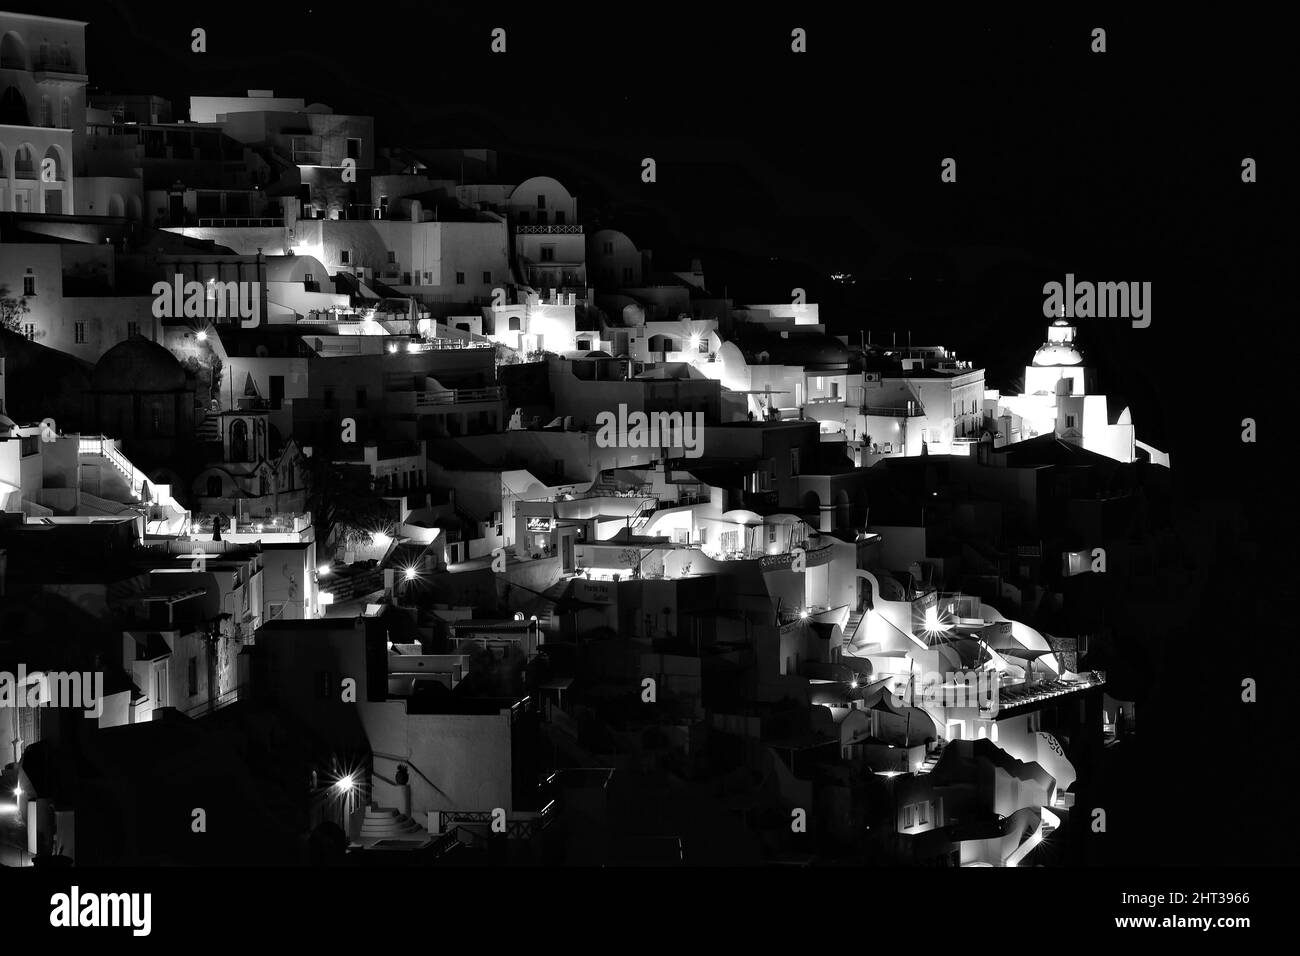 Vue panoramique sur le pittoresque village lumineux de Fira Santorini Grèce la nuit en noir et blanc Banque D'Images